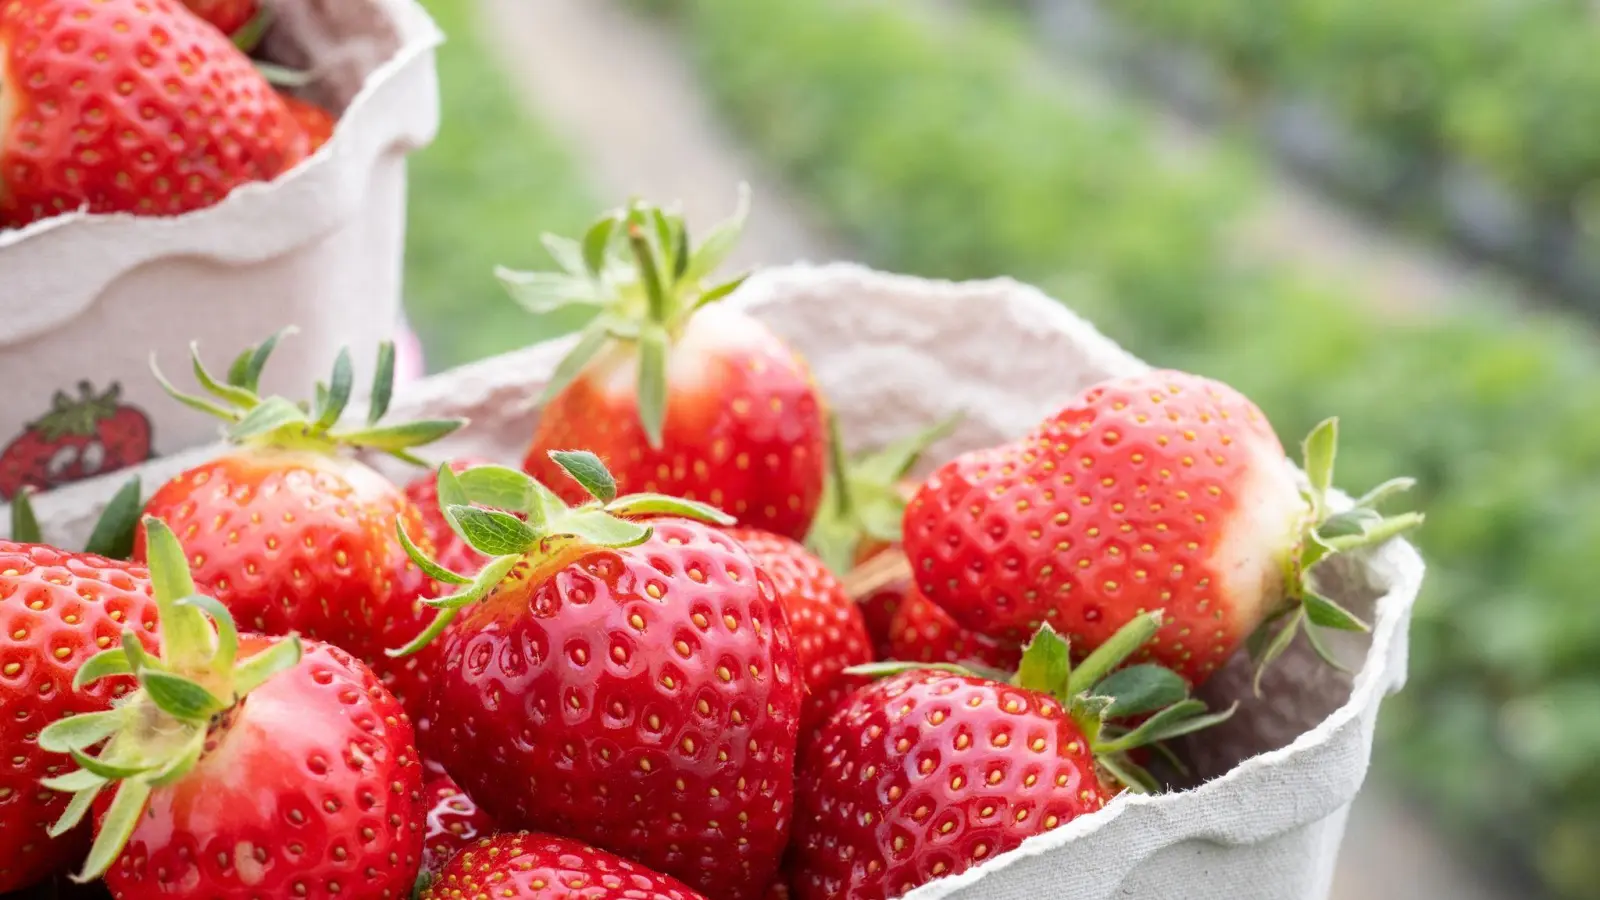 Erdbeeren sollten vor dem Verzehr gut gewaschen werden. (Foto: Sebastian Gollnow/dpa/Archivbild)